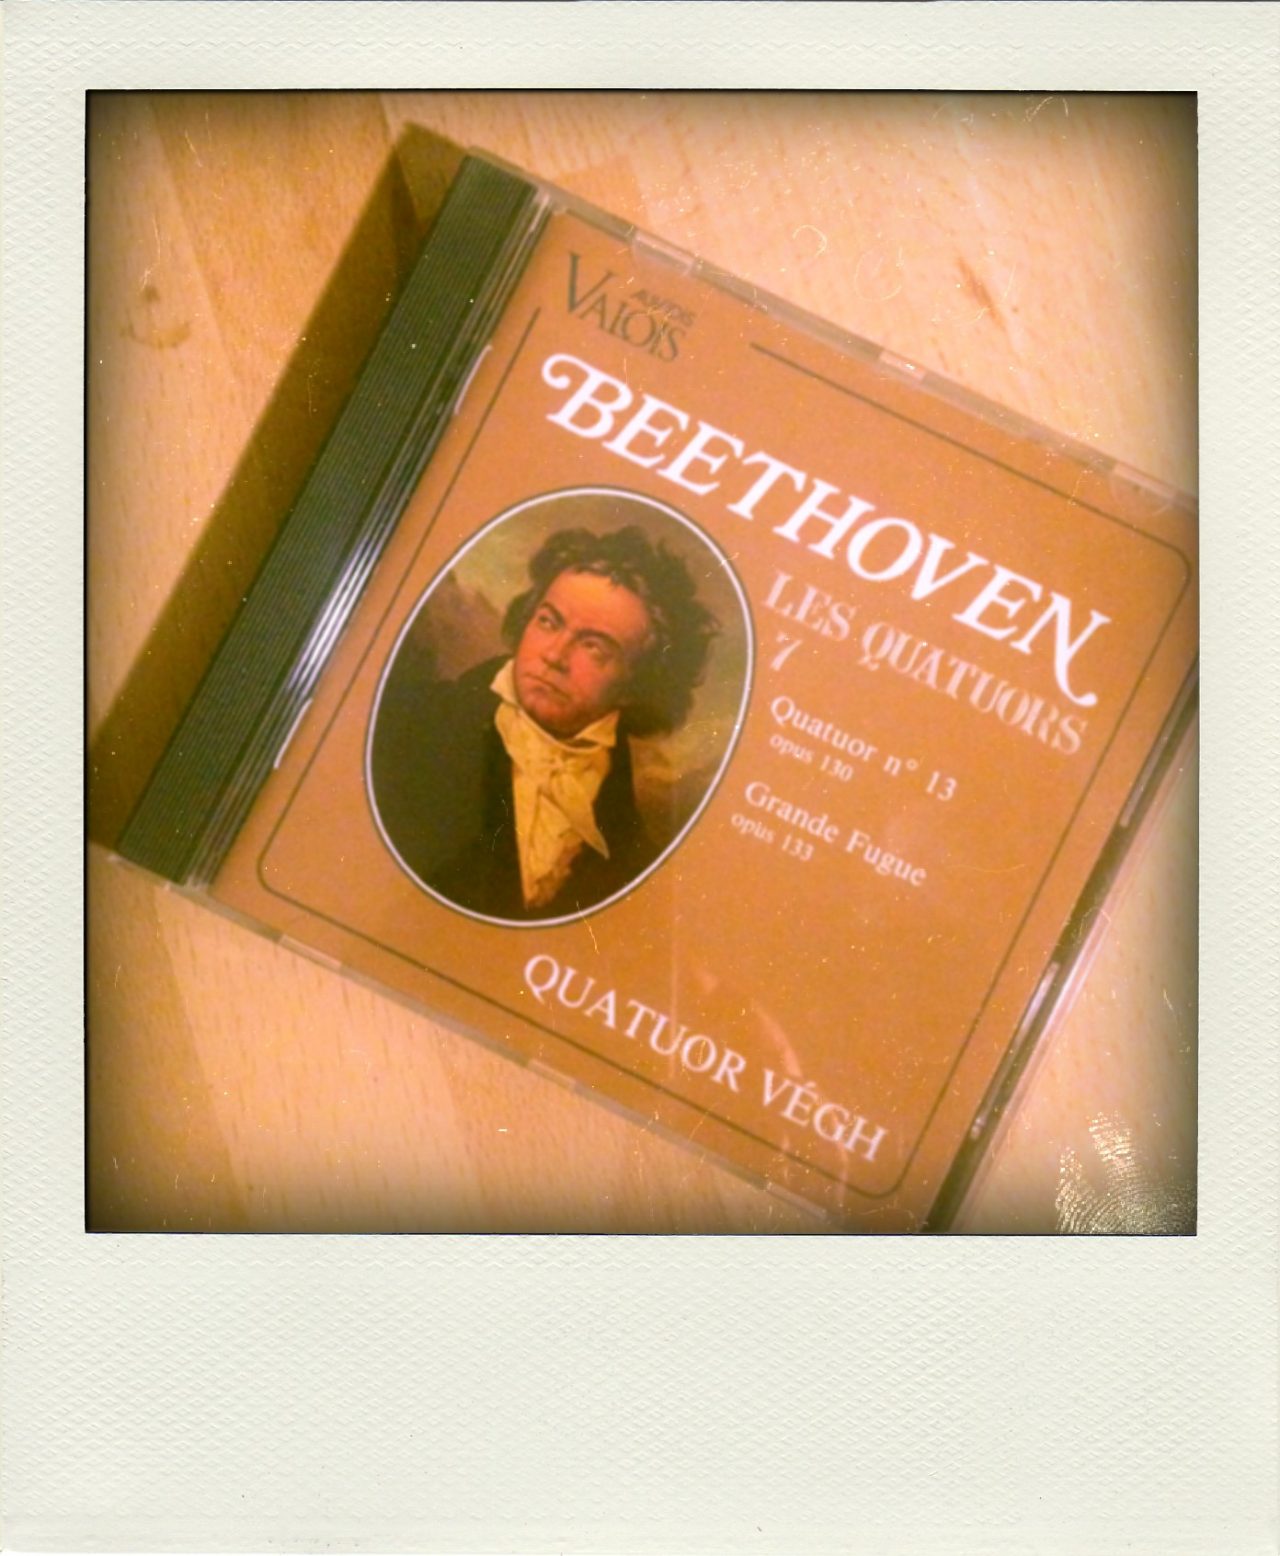 Grande Fugue, Beethoven, Quatuor Végh.